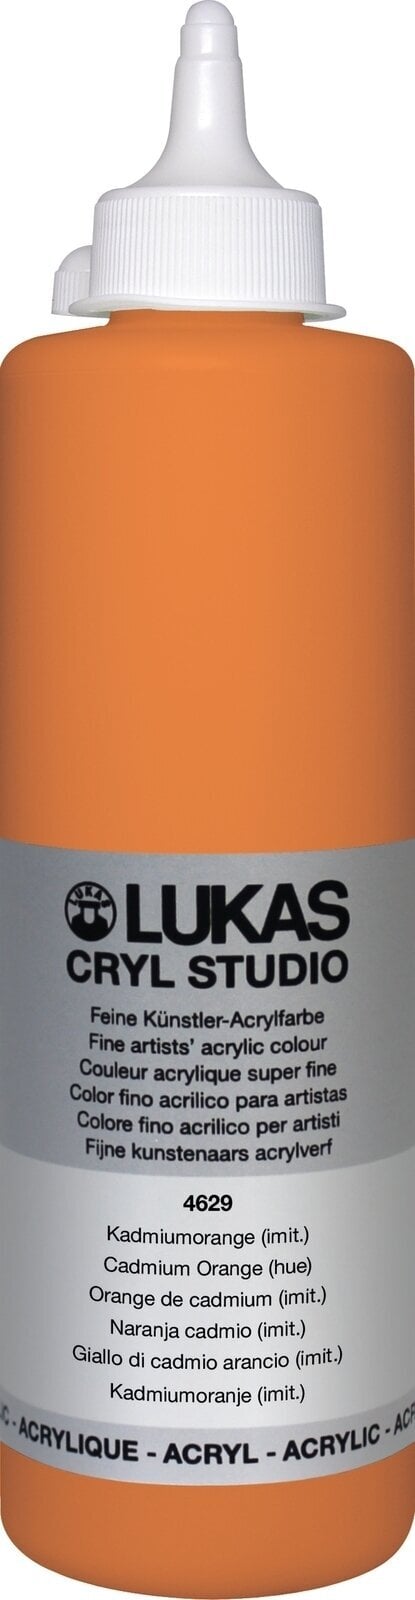 Peinture acrylique Lukas Cryl Studio Plastic Bottle Peinture acrylique Cadmium Orange Hue 500 ml 1 pc